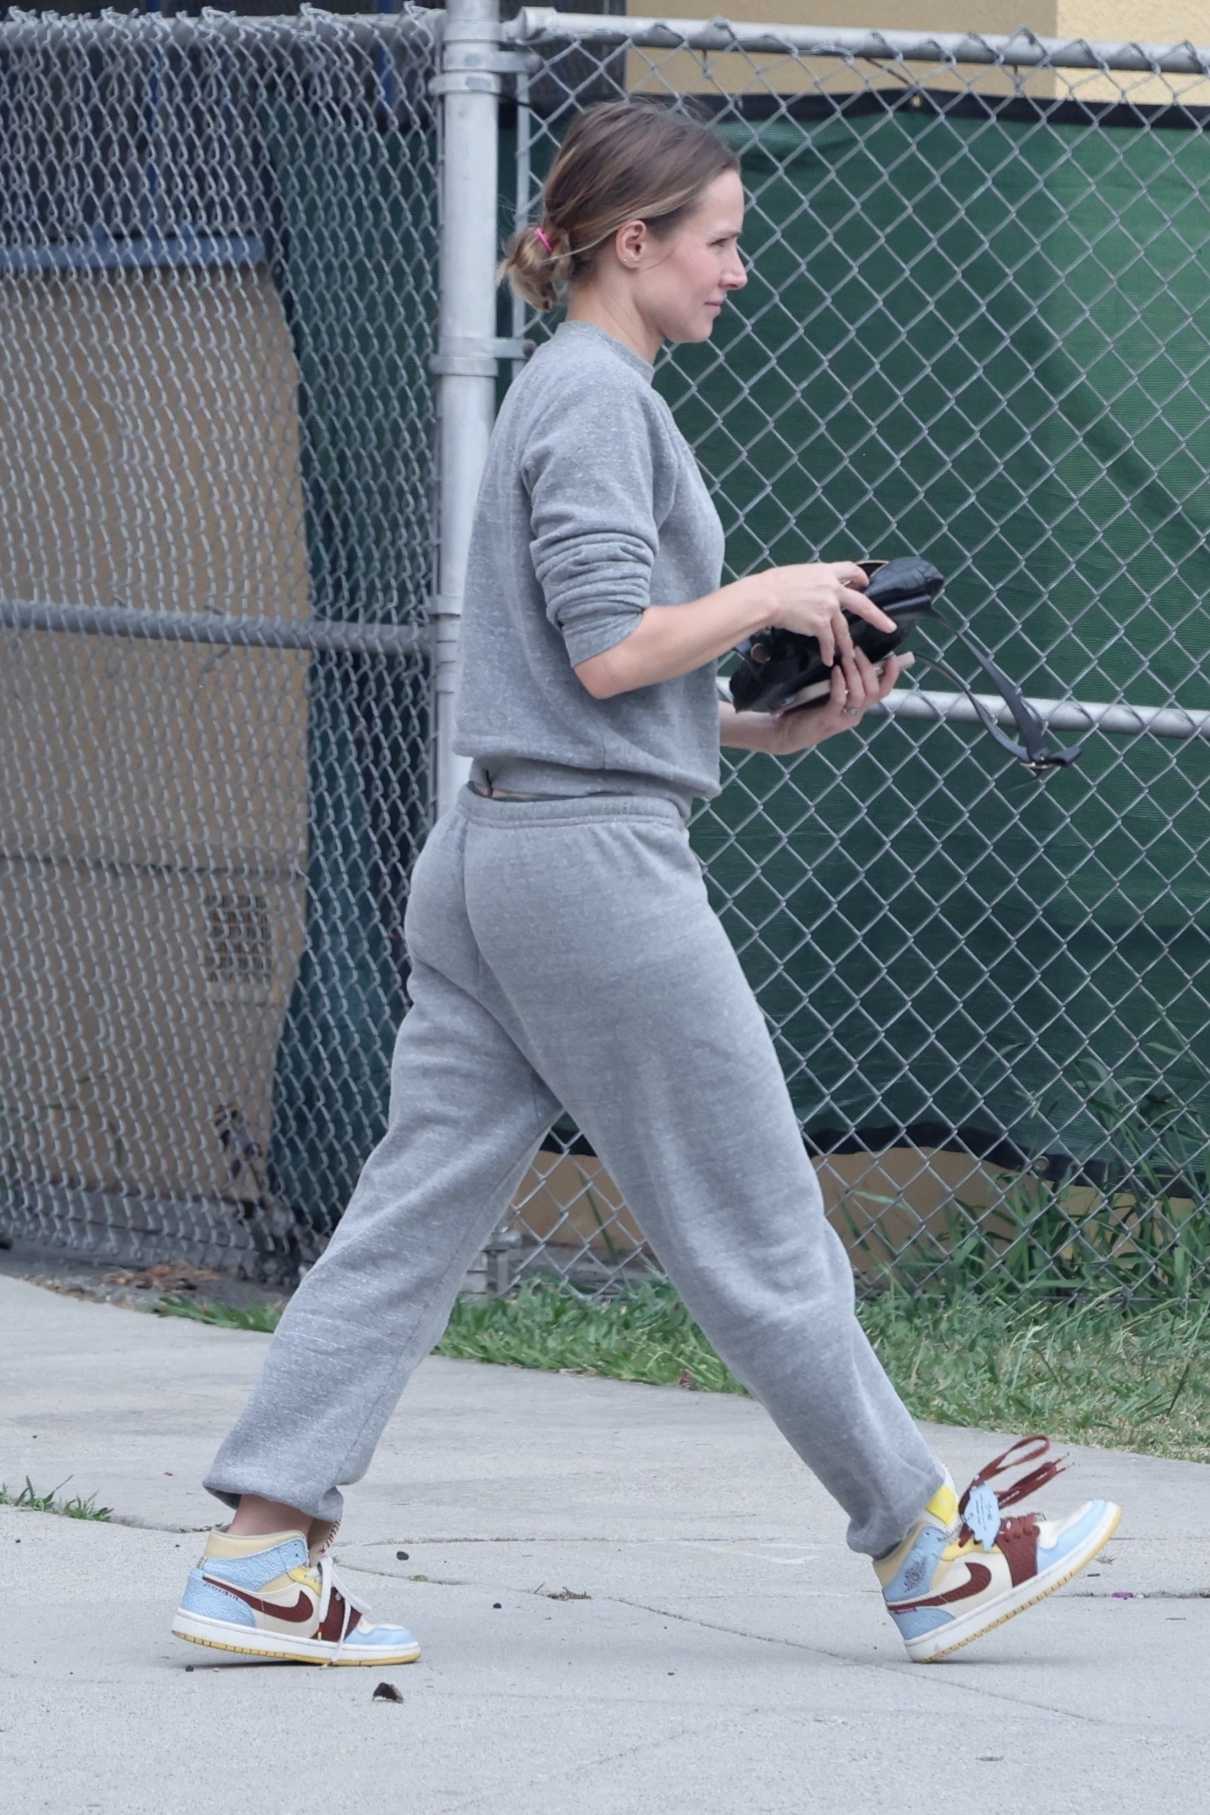 Kristen Bell in a Grey Sweatsuit